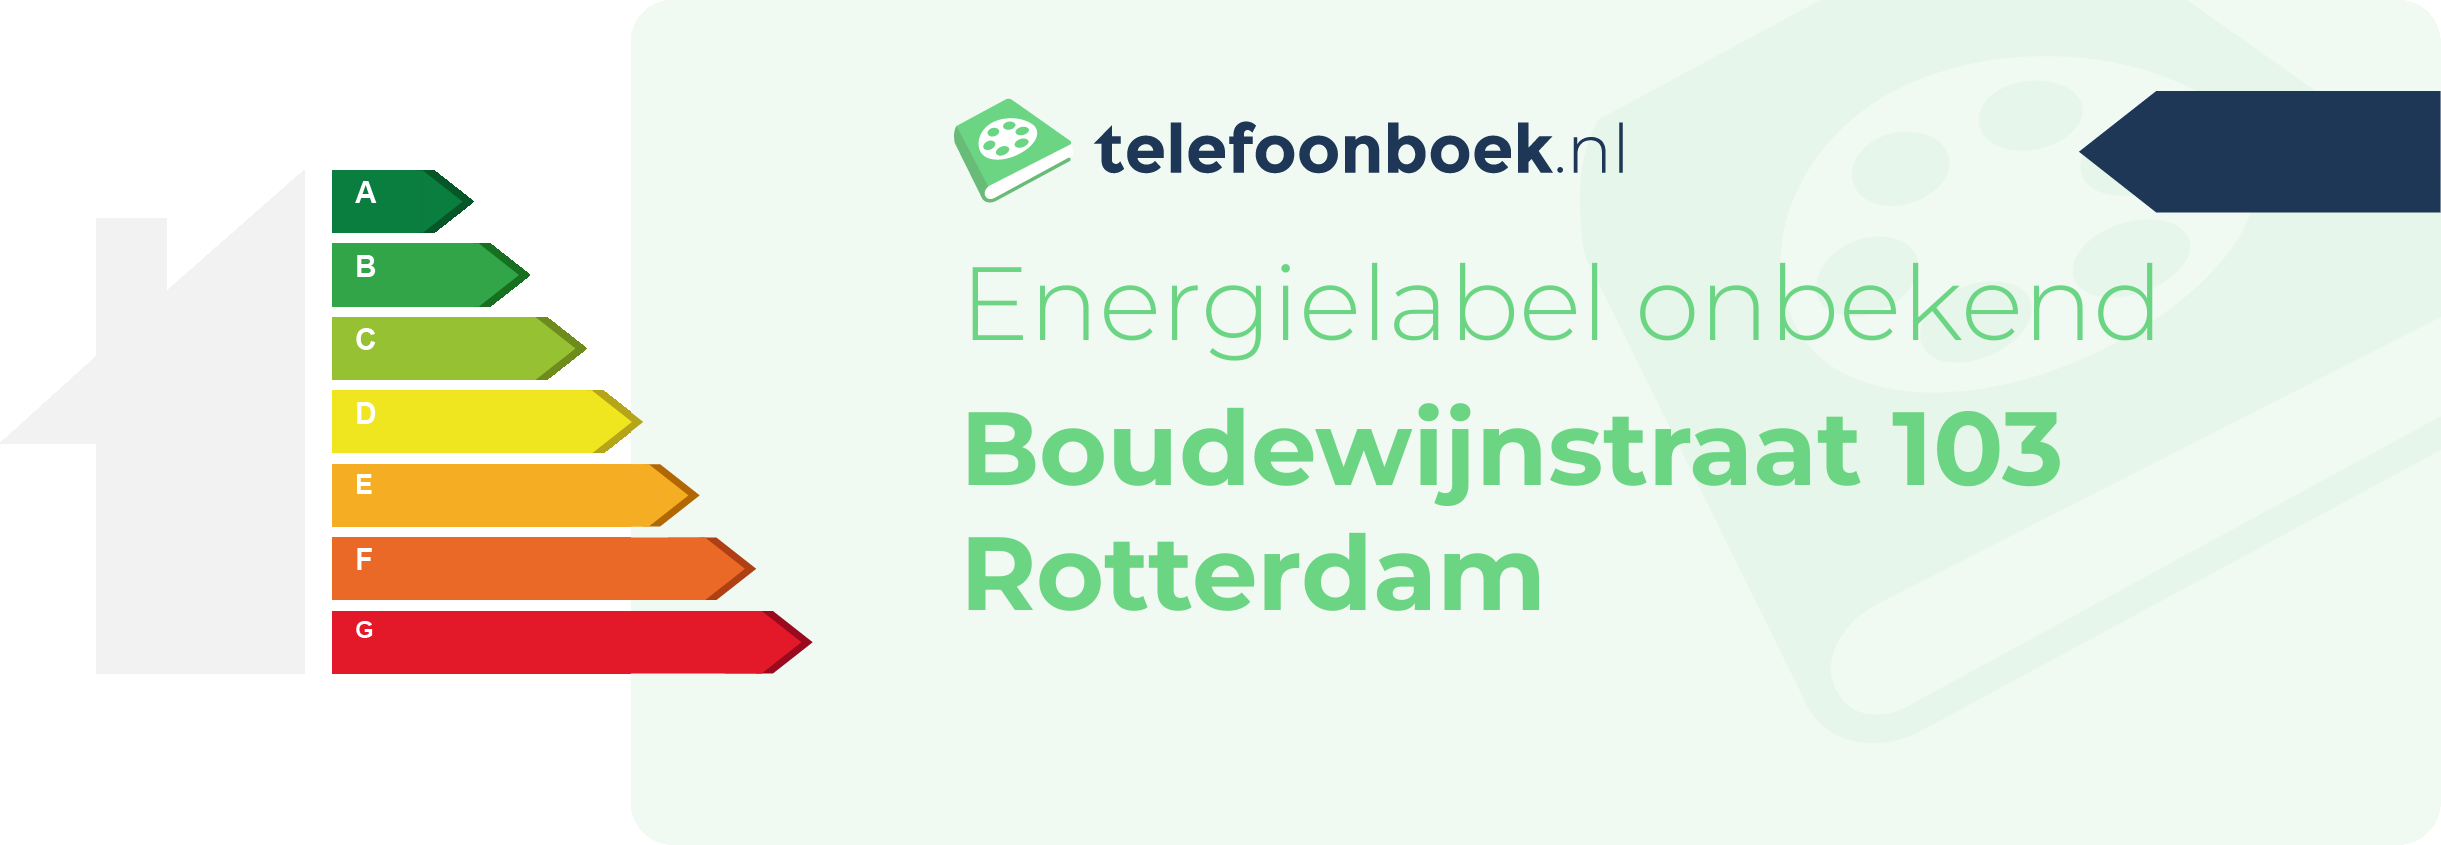 Energielabel Boudewijnstraat 103 Rotterdam